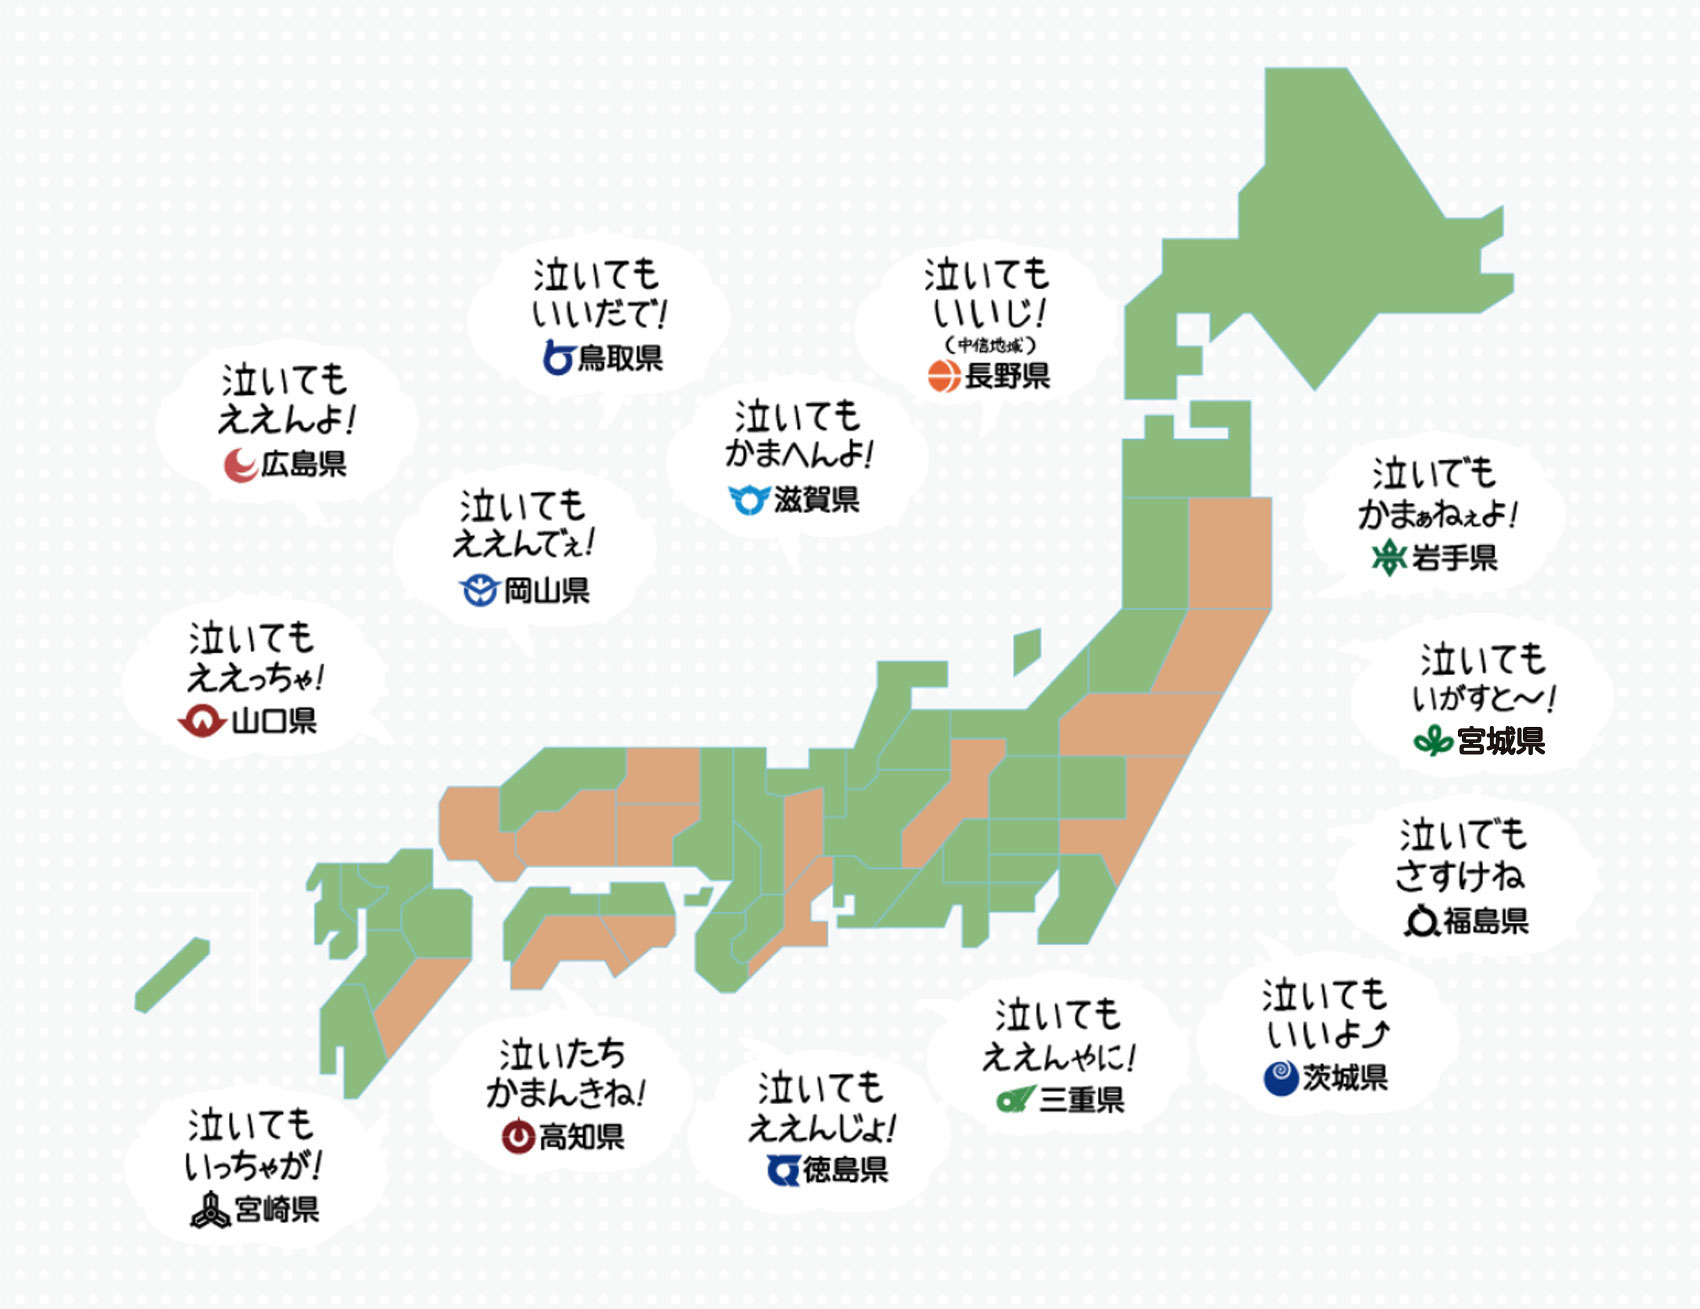 今日は11月19日 いい育児の日 Weラブ赤ちゃんプロジェクトが配布するステッカー 日本創生のための将来世代応援知事同盟 14県方言 版を発表 エキサイト株式会社のプレスリリース